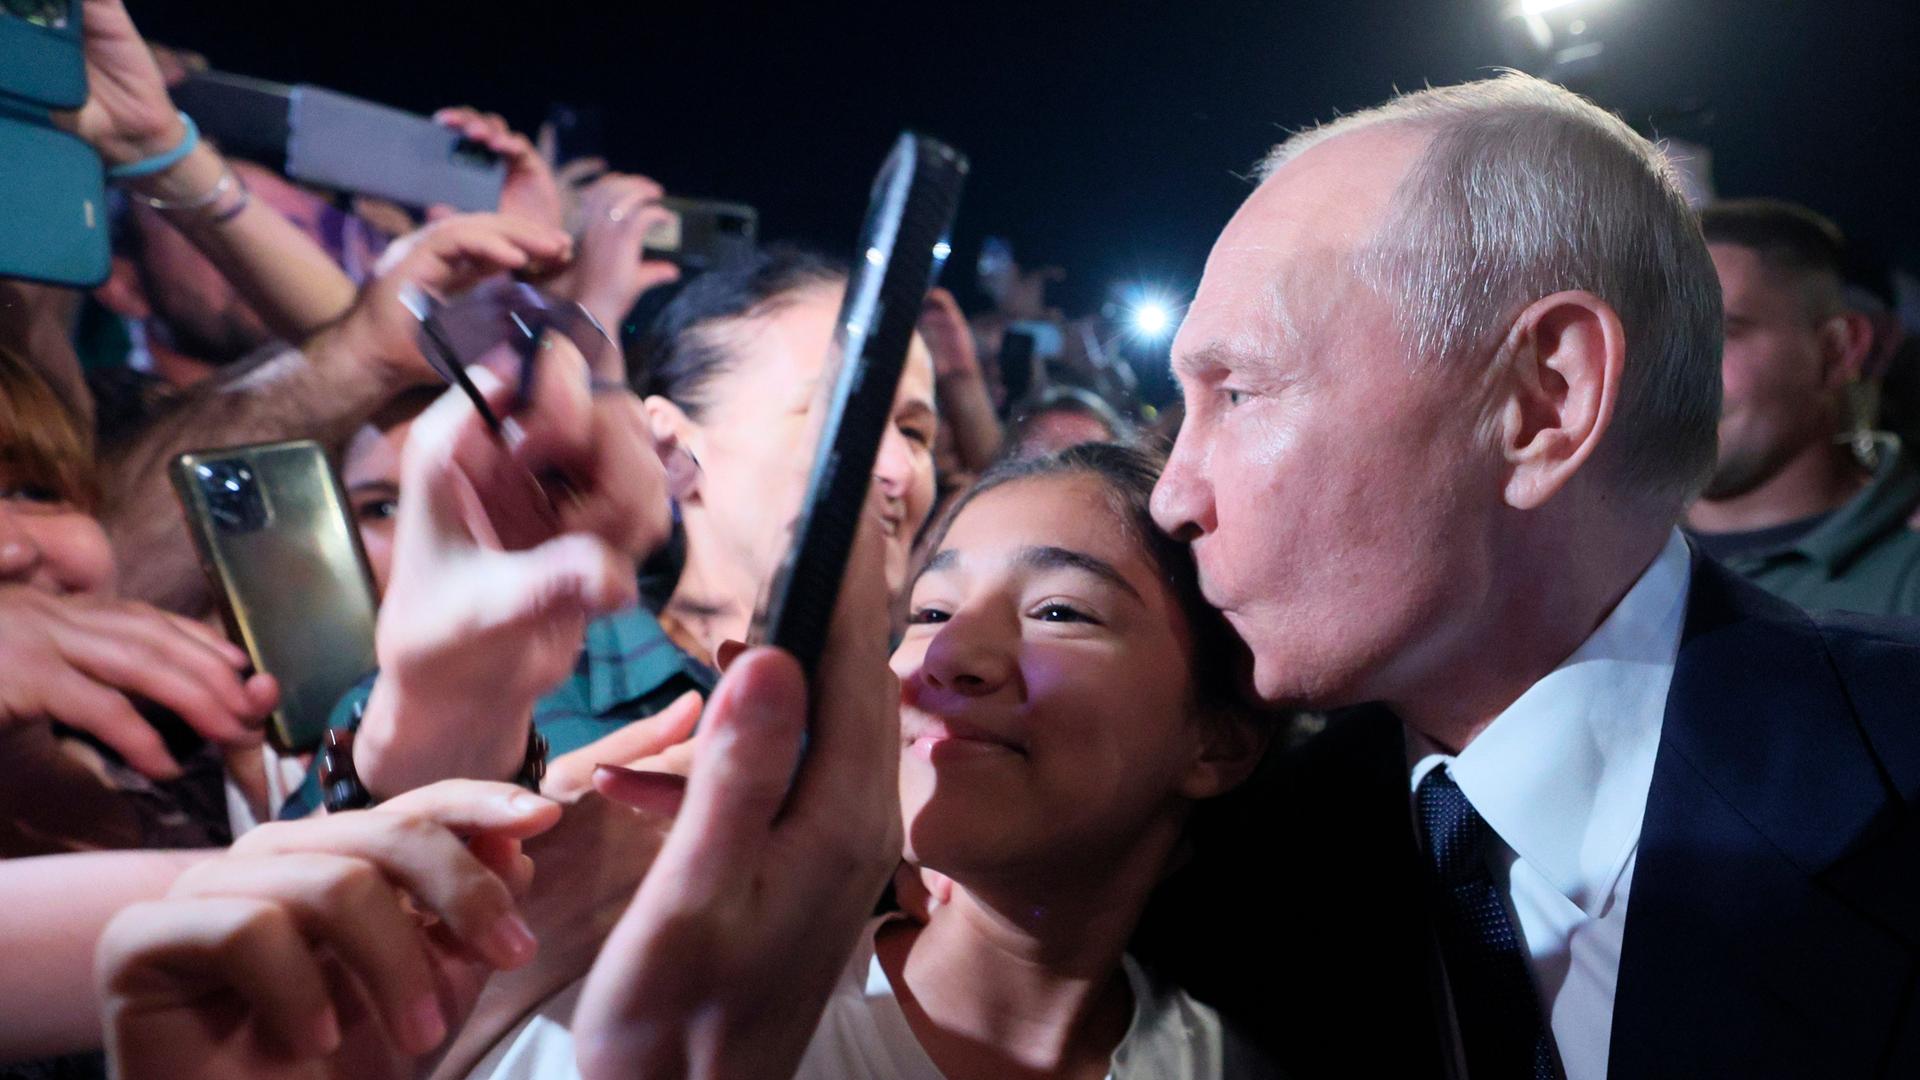 Russlands Präsident Wladimir Putin (r.) in Pose für ein Selfie in einer Menschenmenge in Dagestan am 28.6.2023

